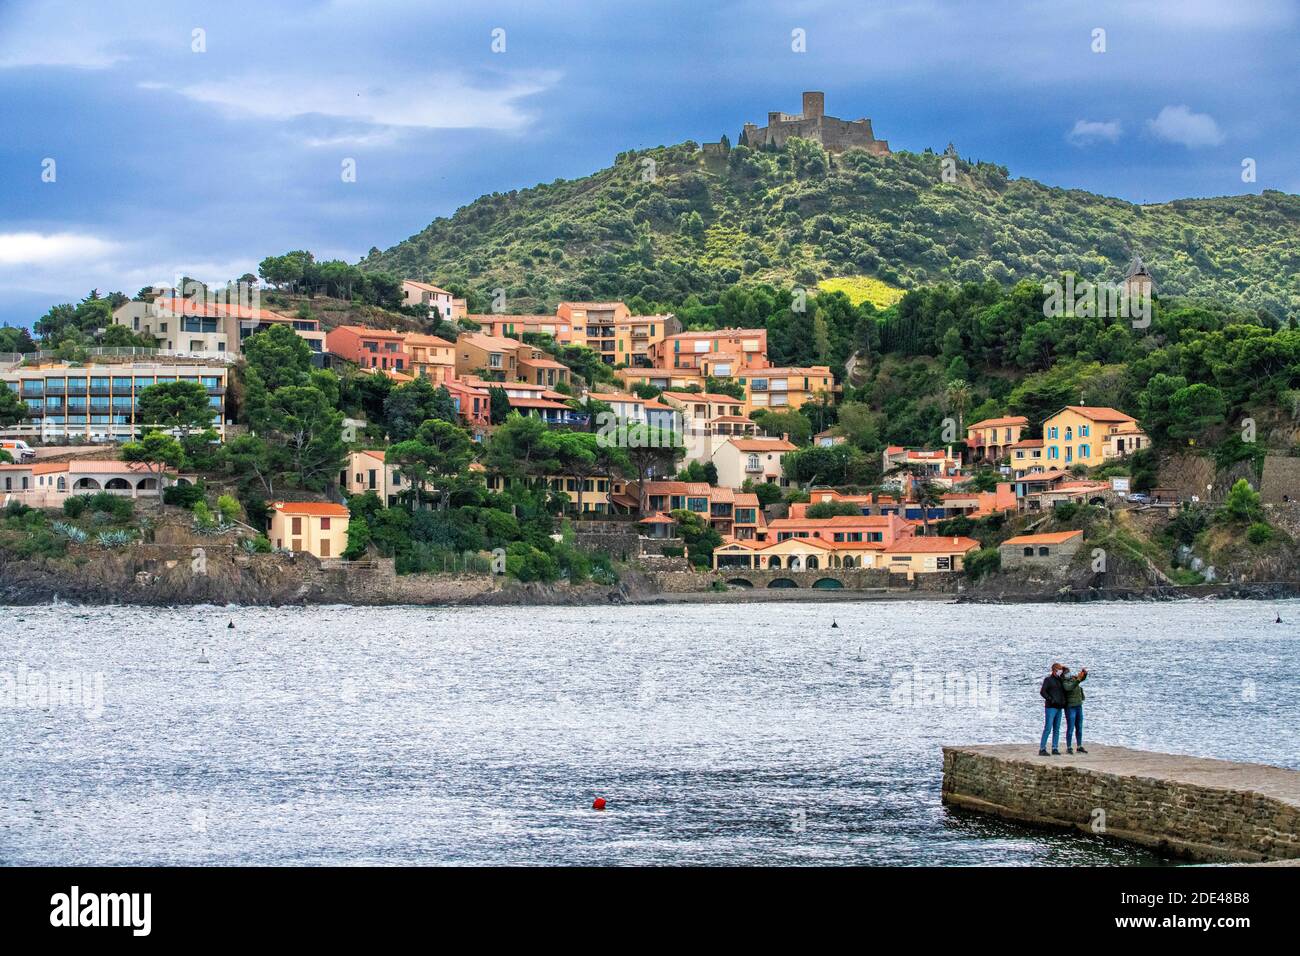 Turm und Landschaft Strand am Meer des malerischen Dorfes Collioure, in der Nähe von Perpignan im Süden Frankreichs Languedoc-Roussillon Cote Vermeille Midi Stockfoto